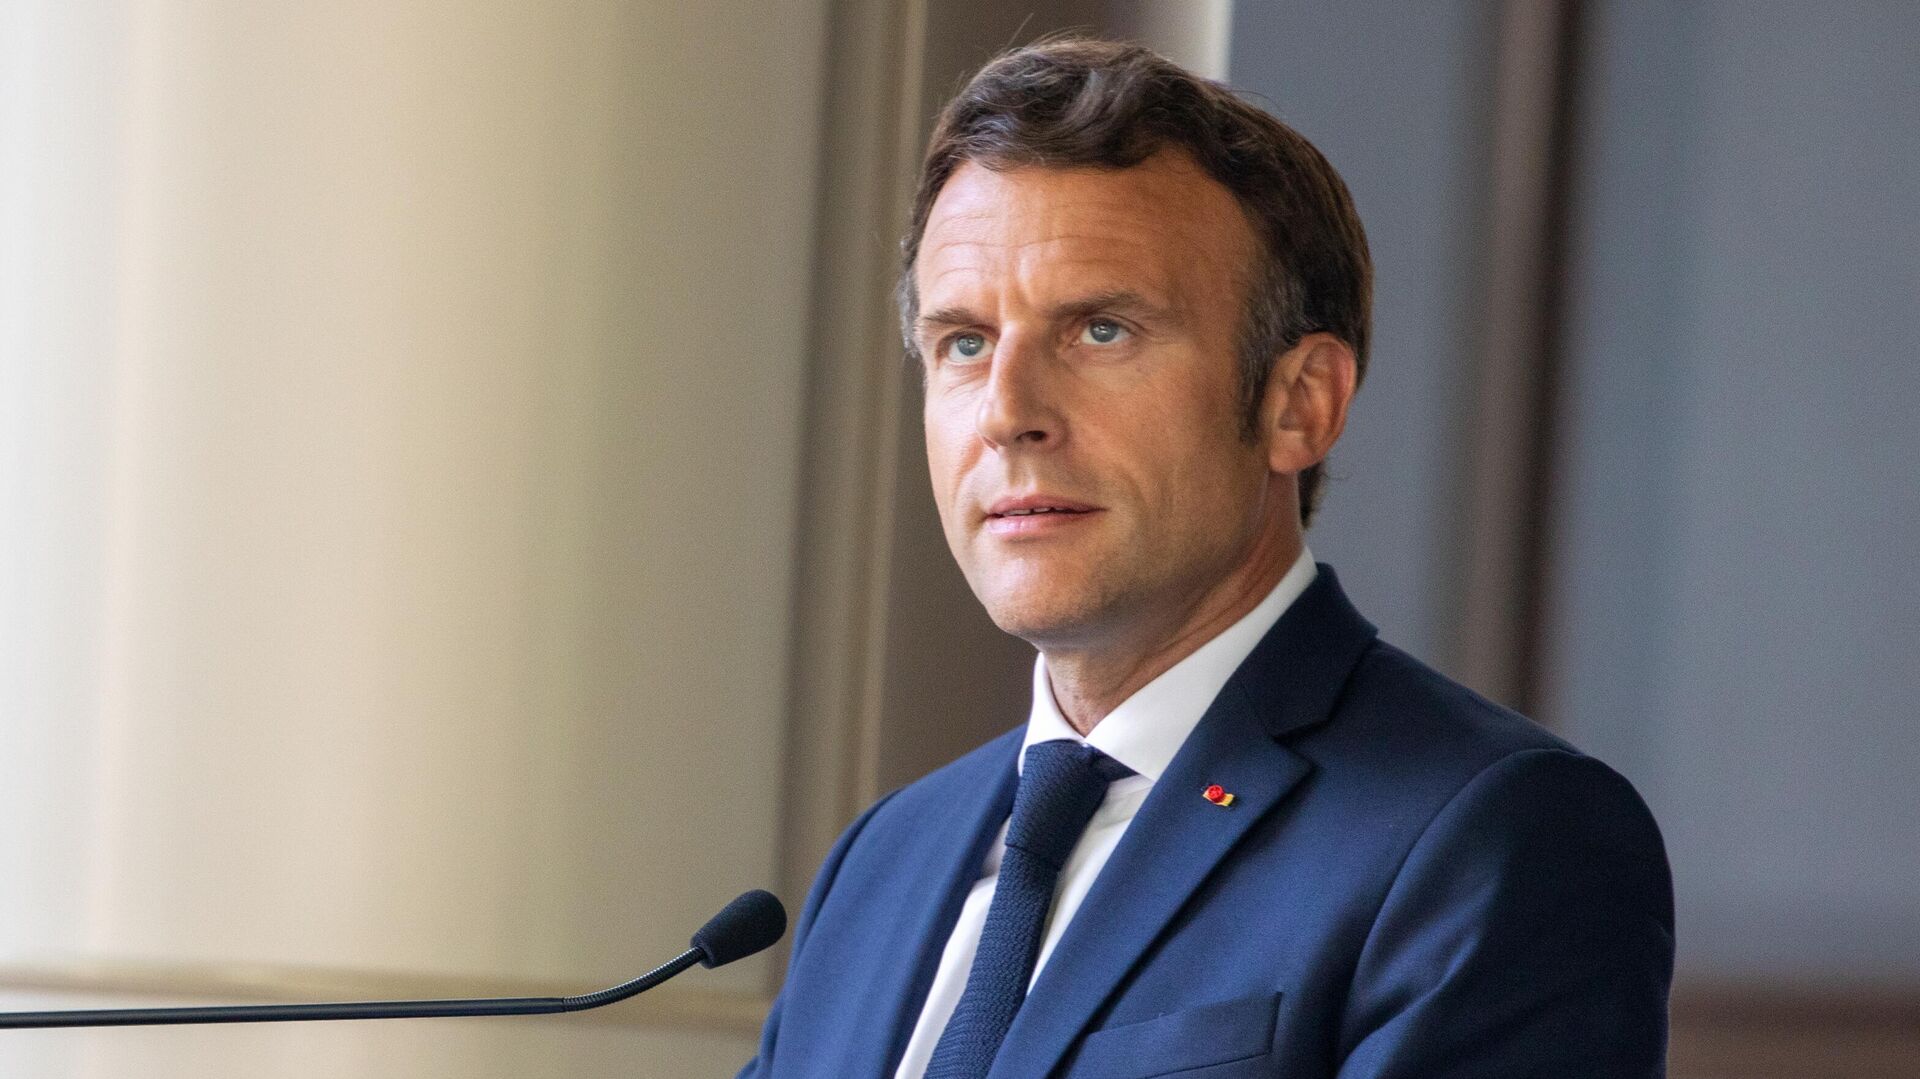 Fransa emeklilik reformunda geri adım mı atacak? Macron’dan açıklama